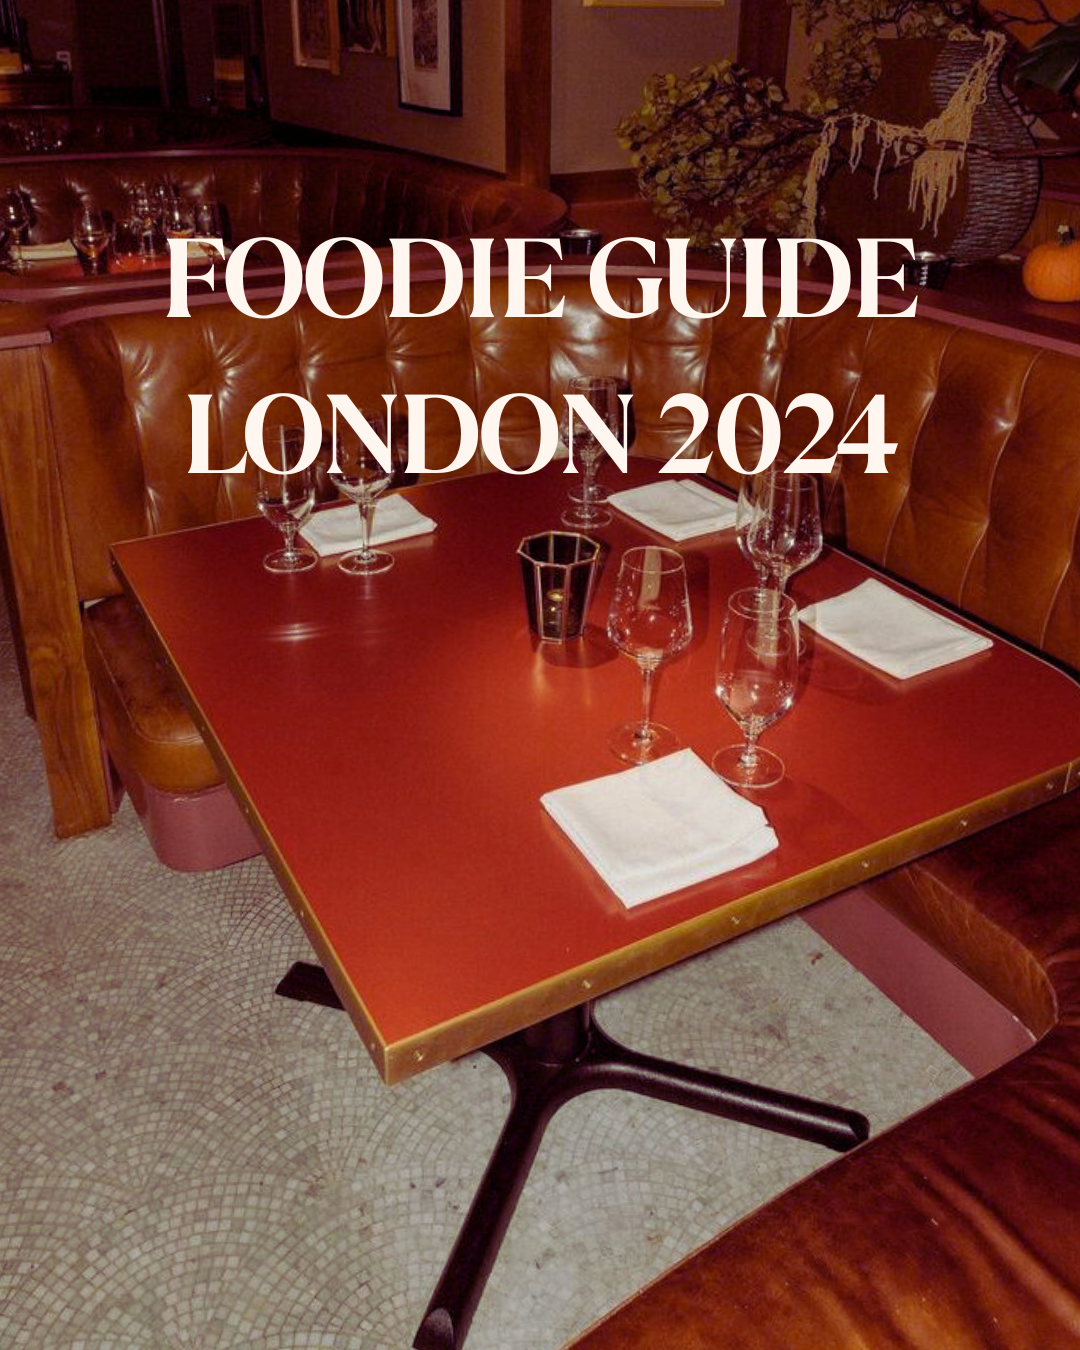 Foodie Guide London 2024